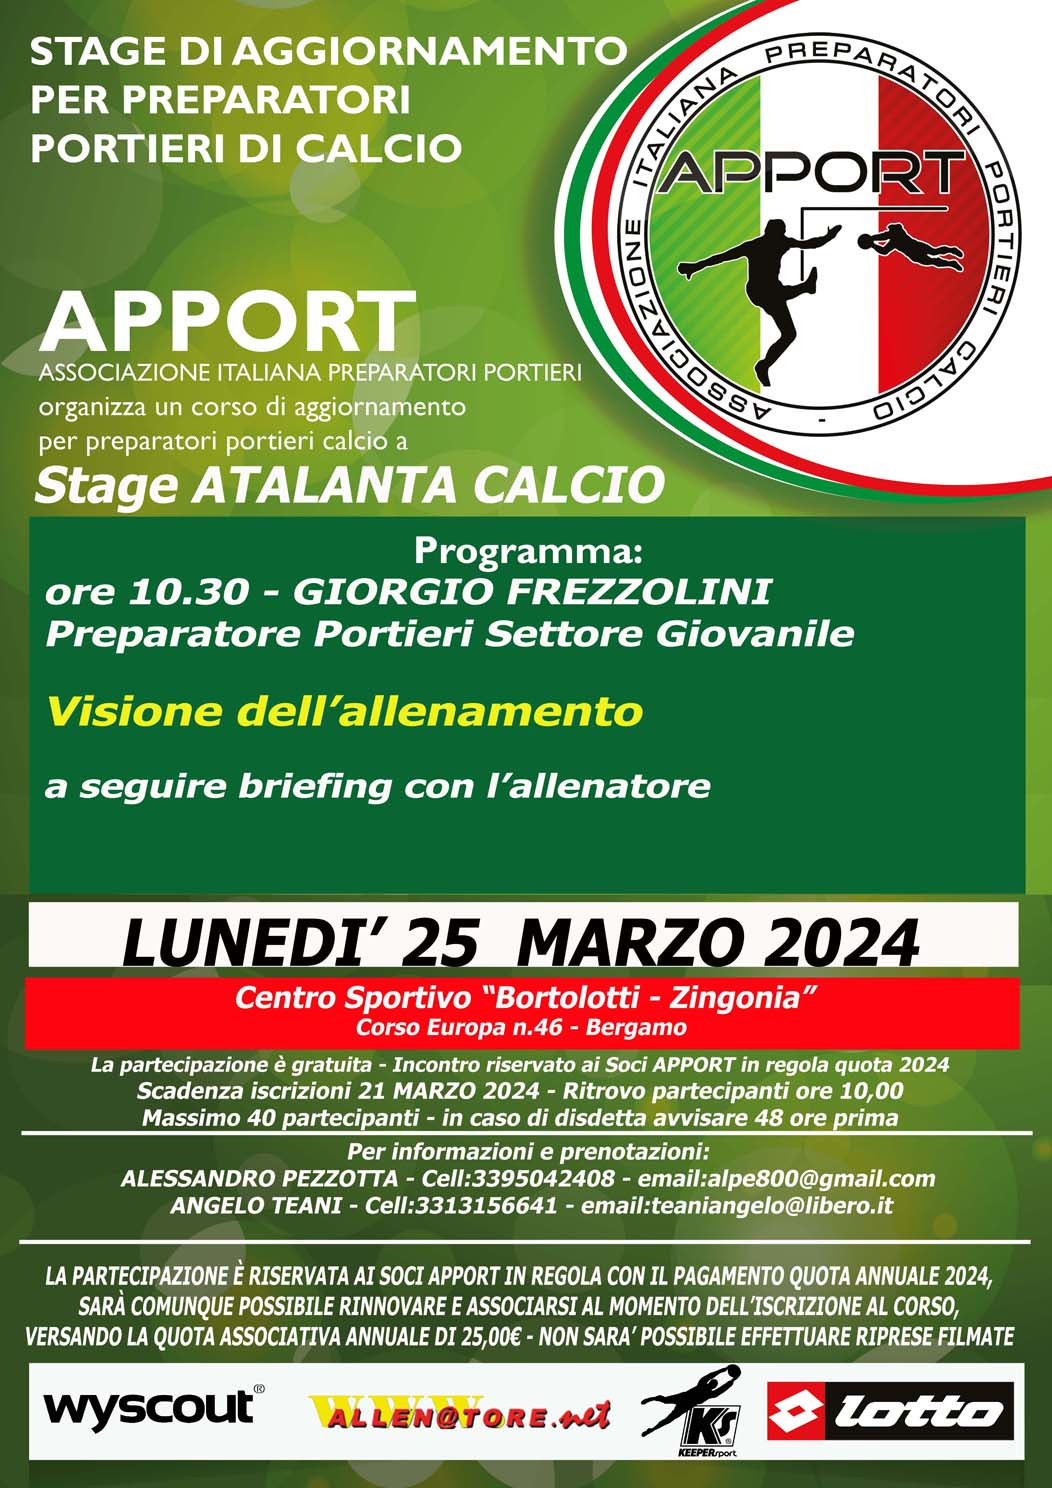 25 Marzo 2024 - Visita ATALANTA BFC e visione allenamento con Mr. Giorgio Frezzolini